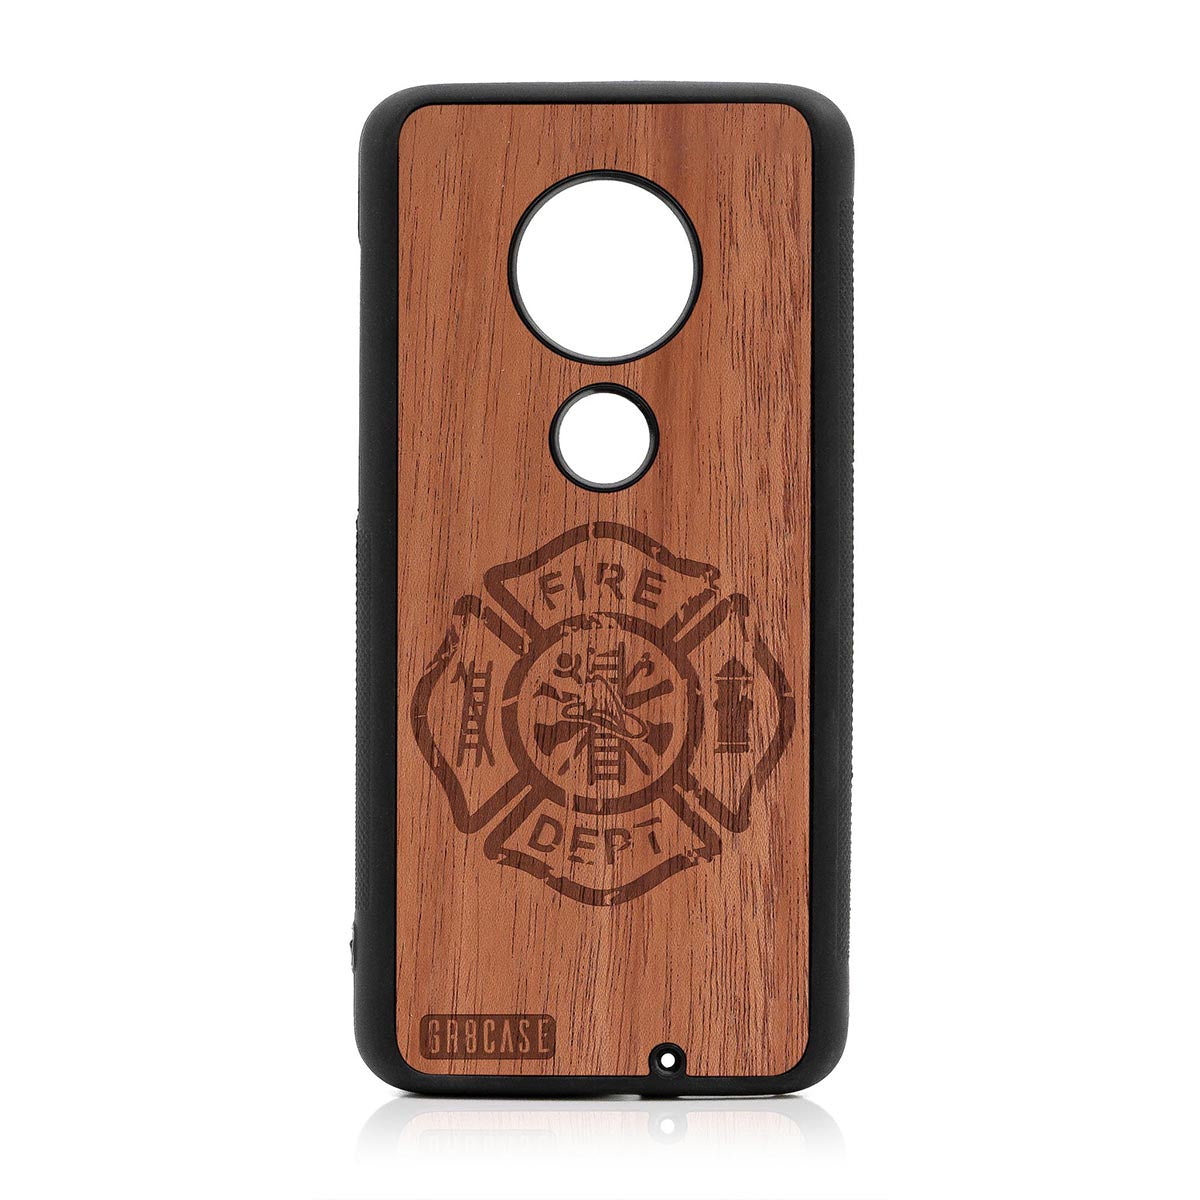 Fire Department Design Wood Case Moto G7 Plus by GR8CASE